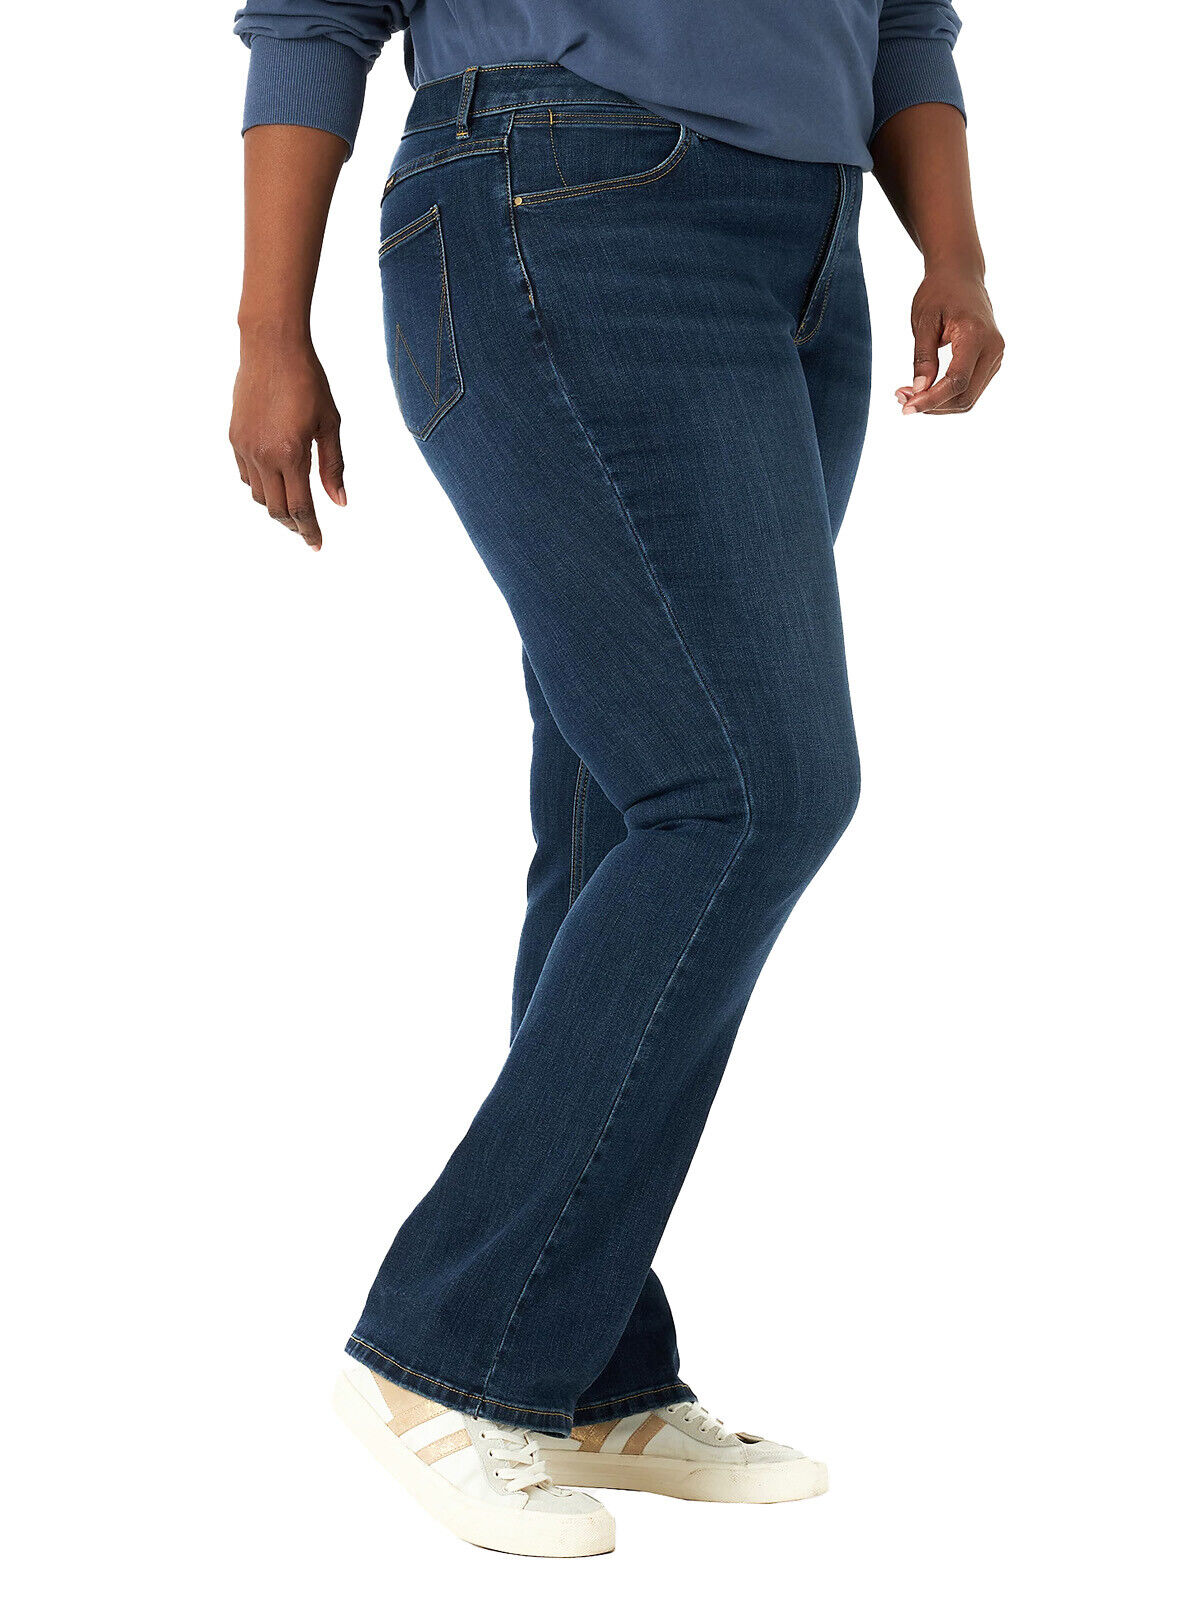 EX Wrangler Dark Denim High Rise Bold Boot Jeans in Sizes 20-28 Regular &amp; Long